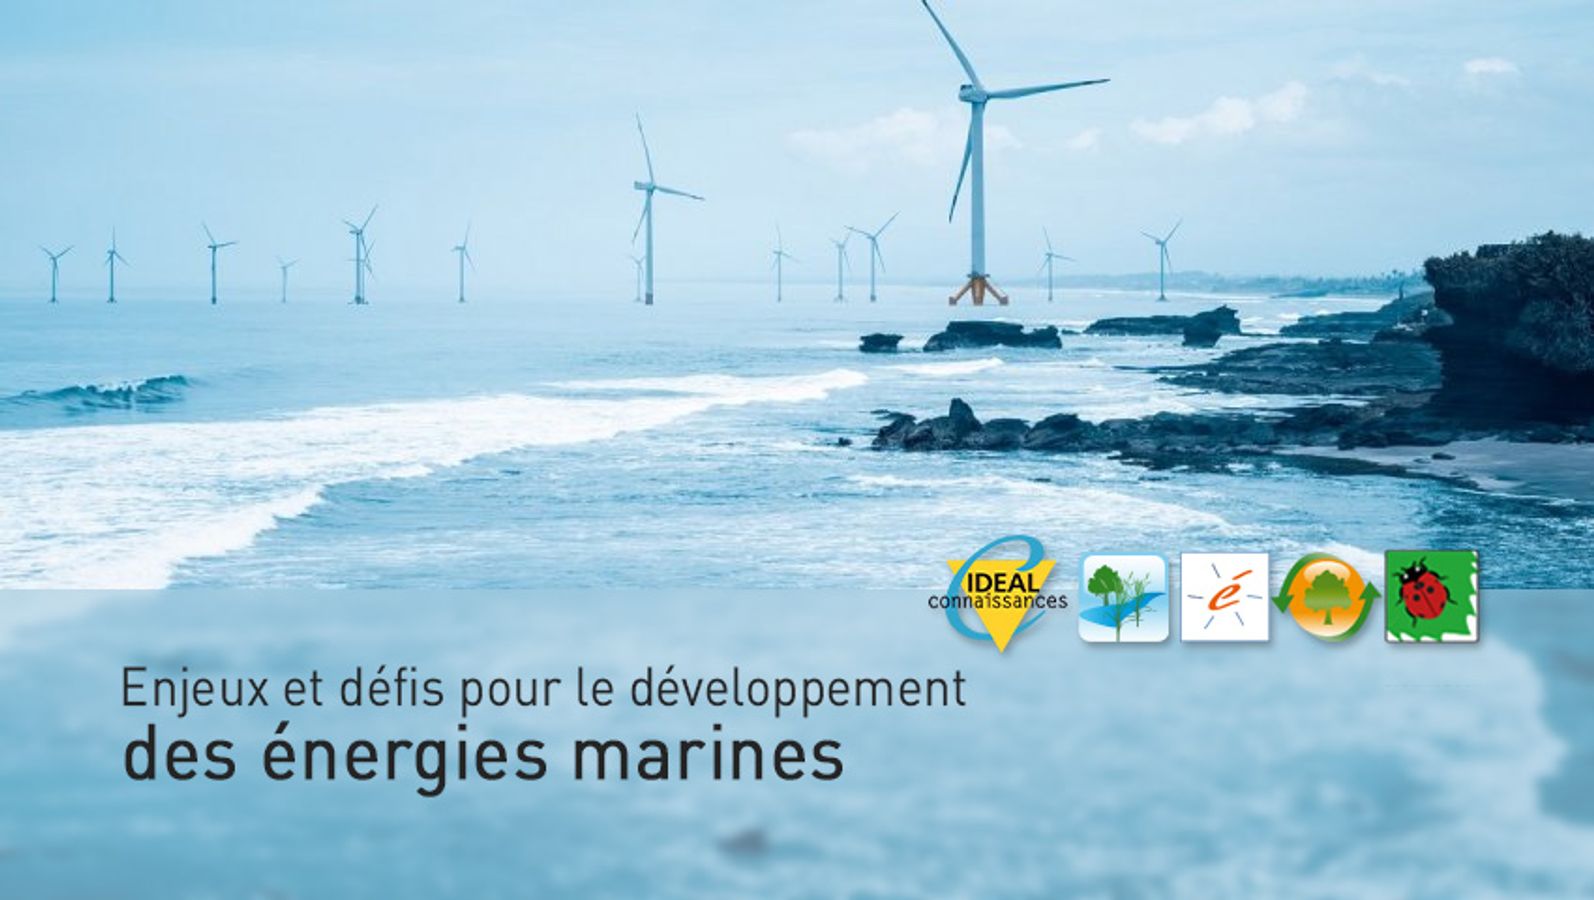 Enjeux et défis pour le développement des énergies marines